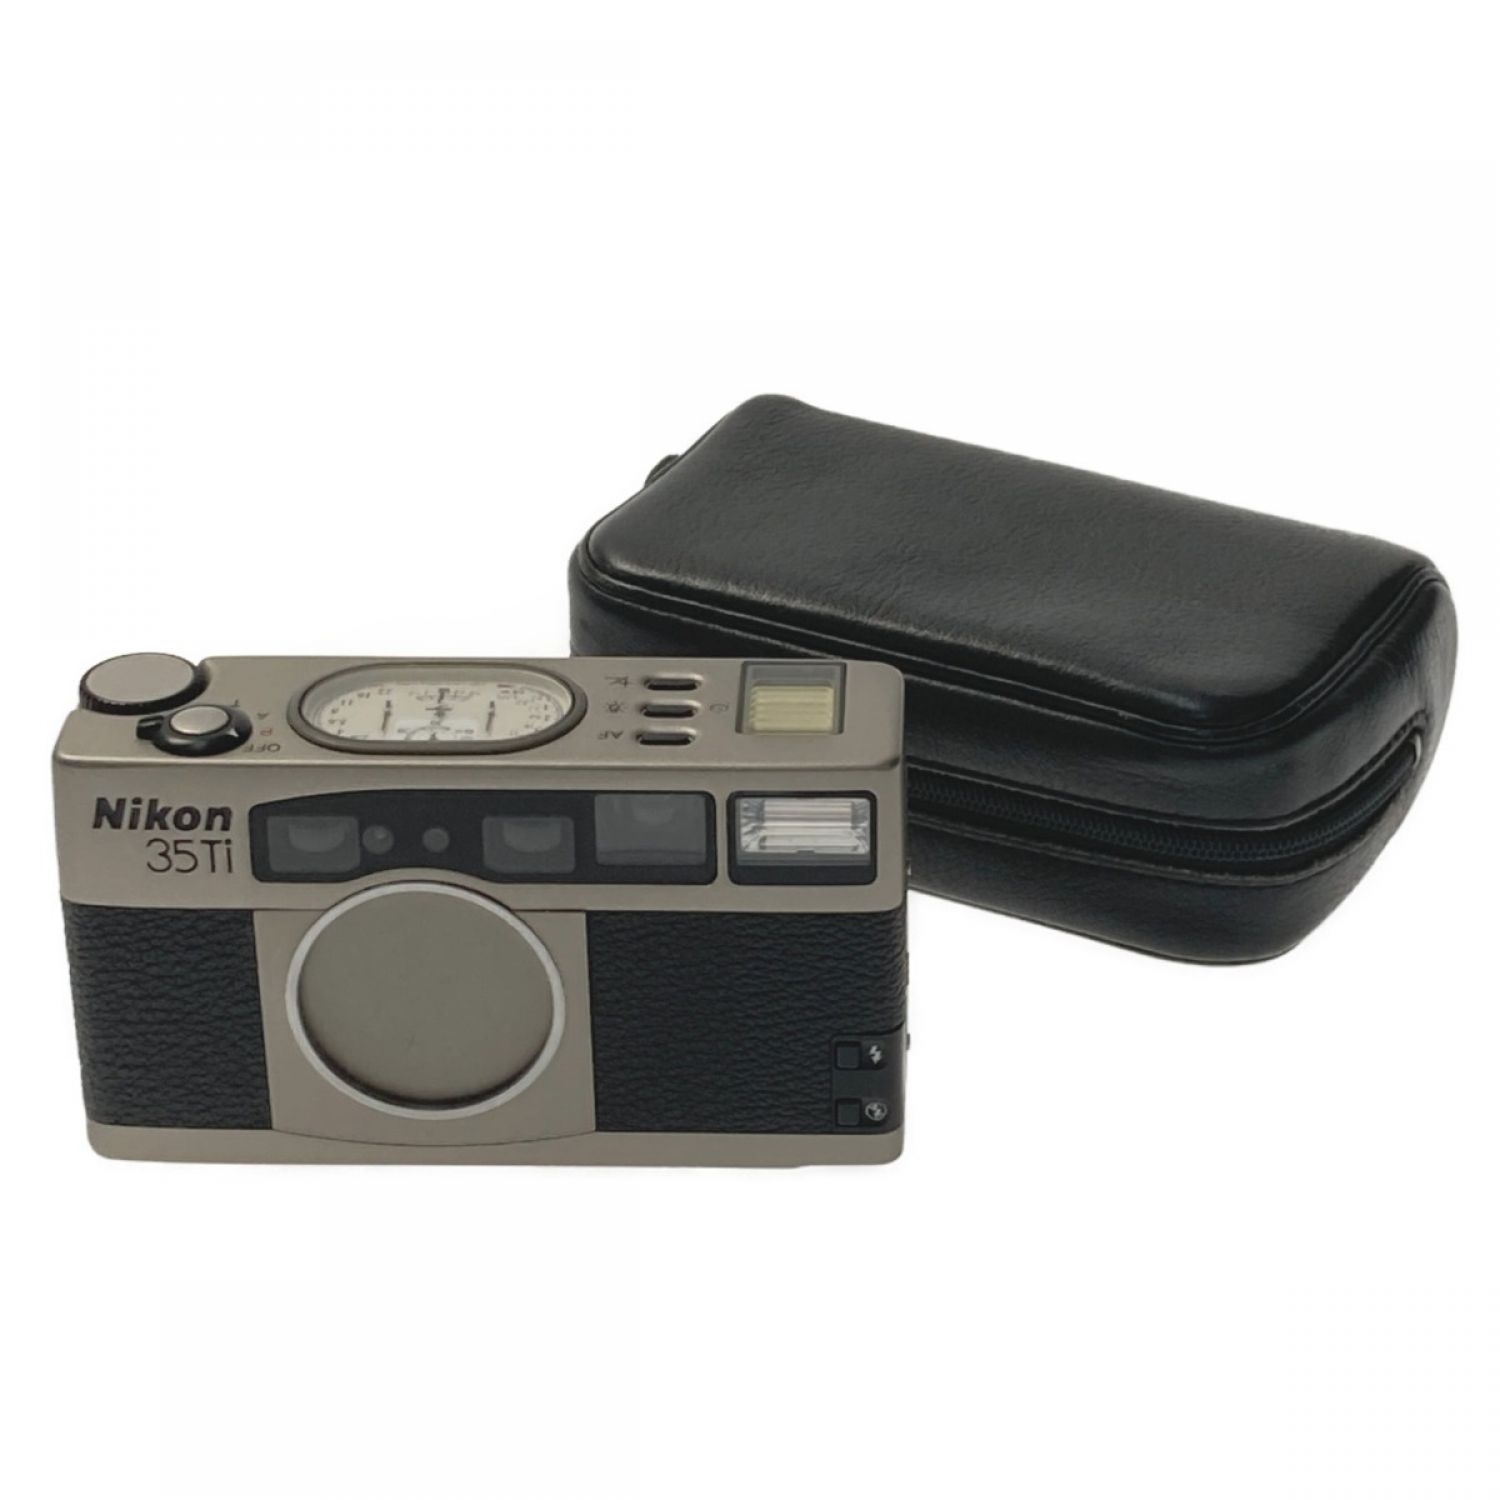 Nikon ニコン 35Ti コンパクト フィルムカメラ ケース付きフィルム